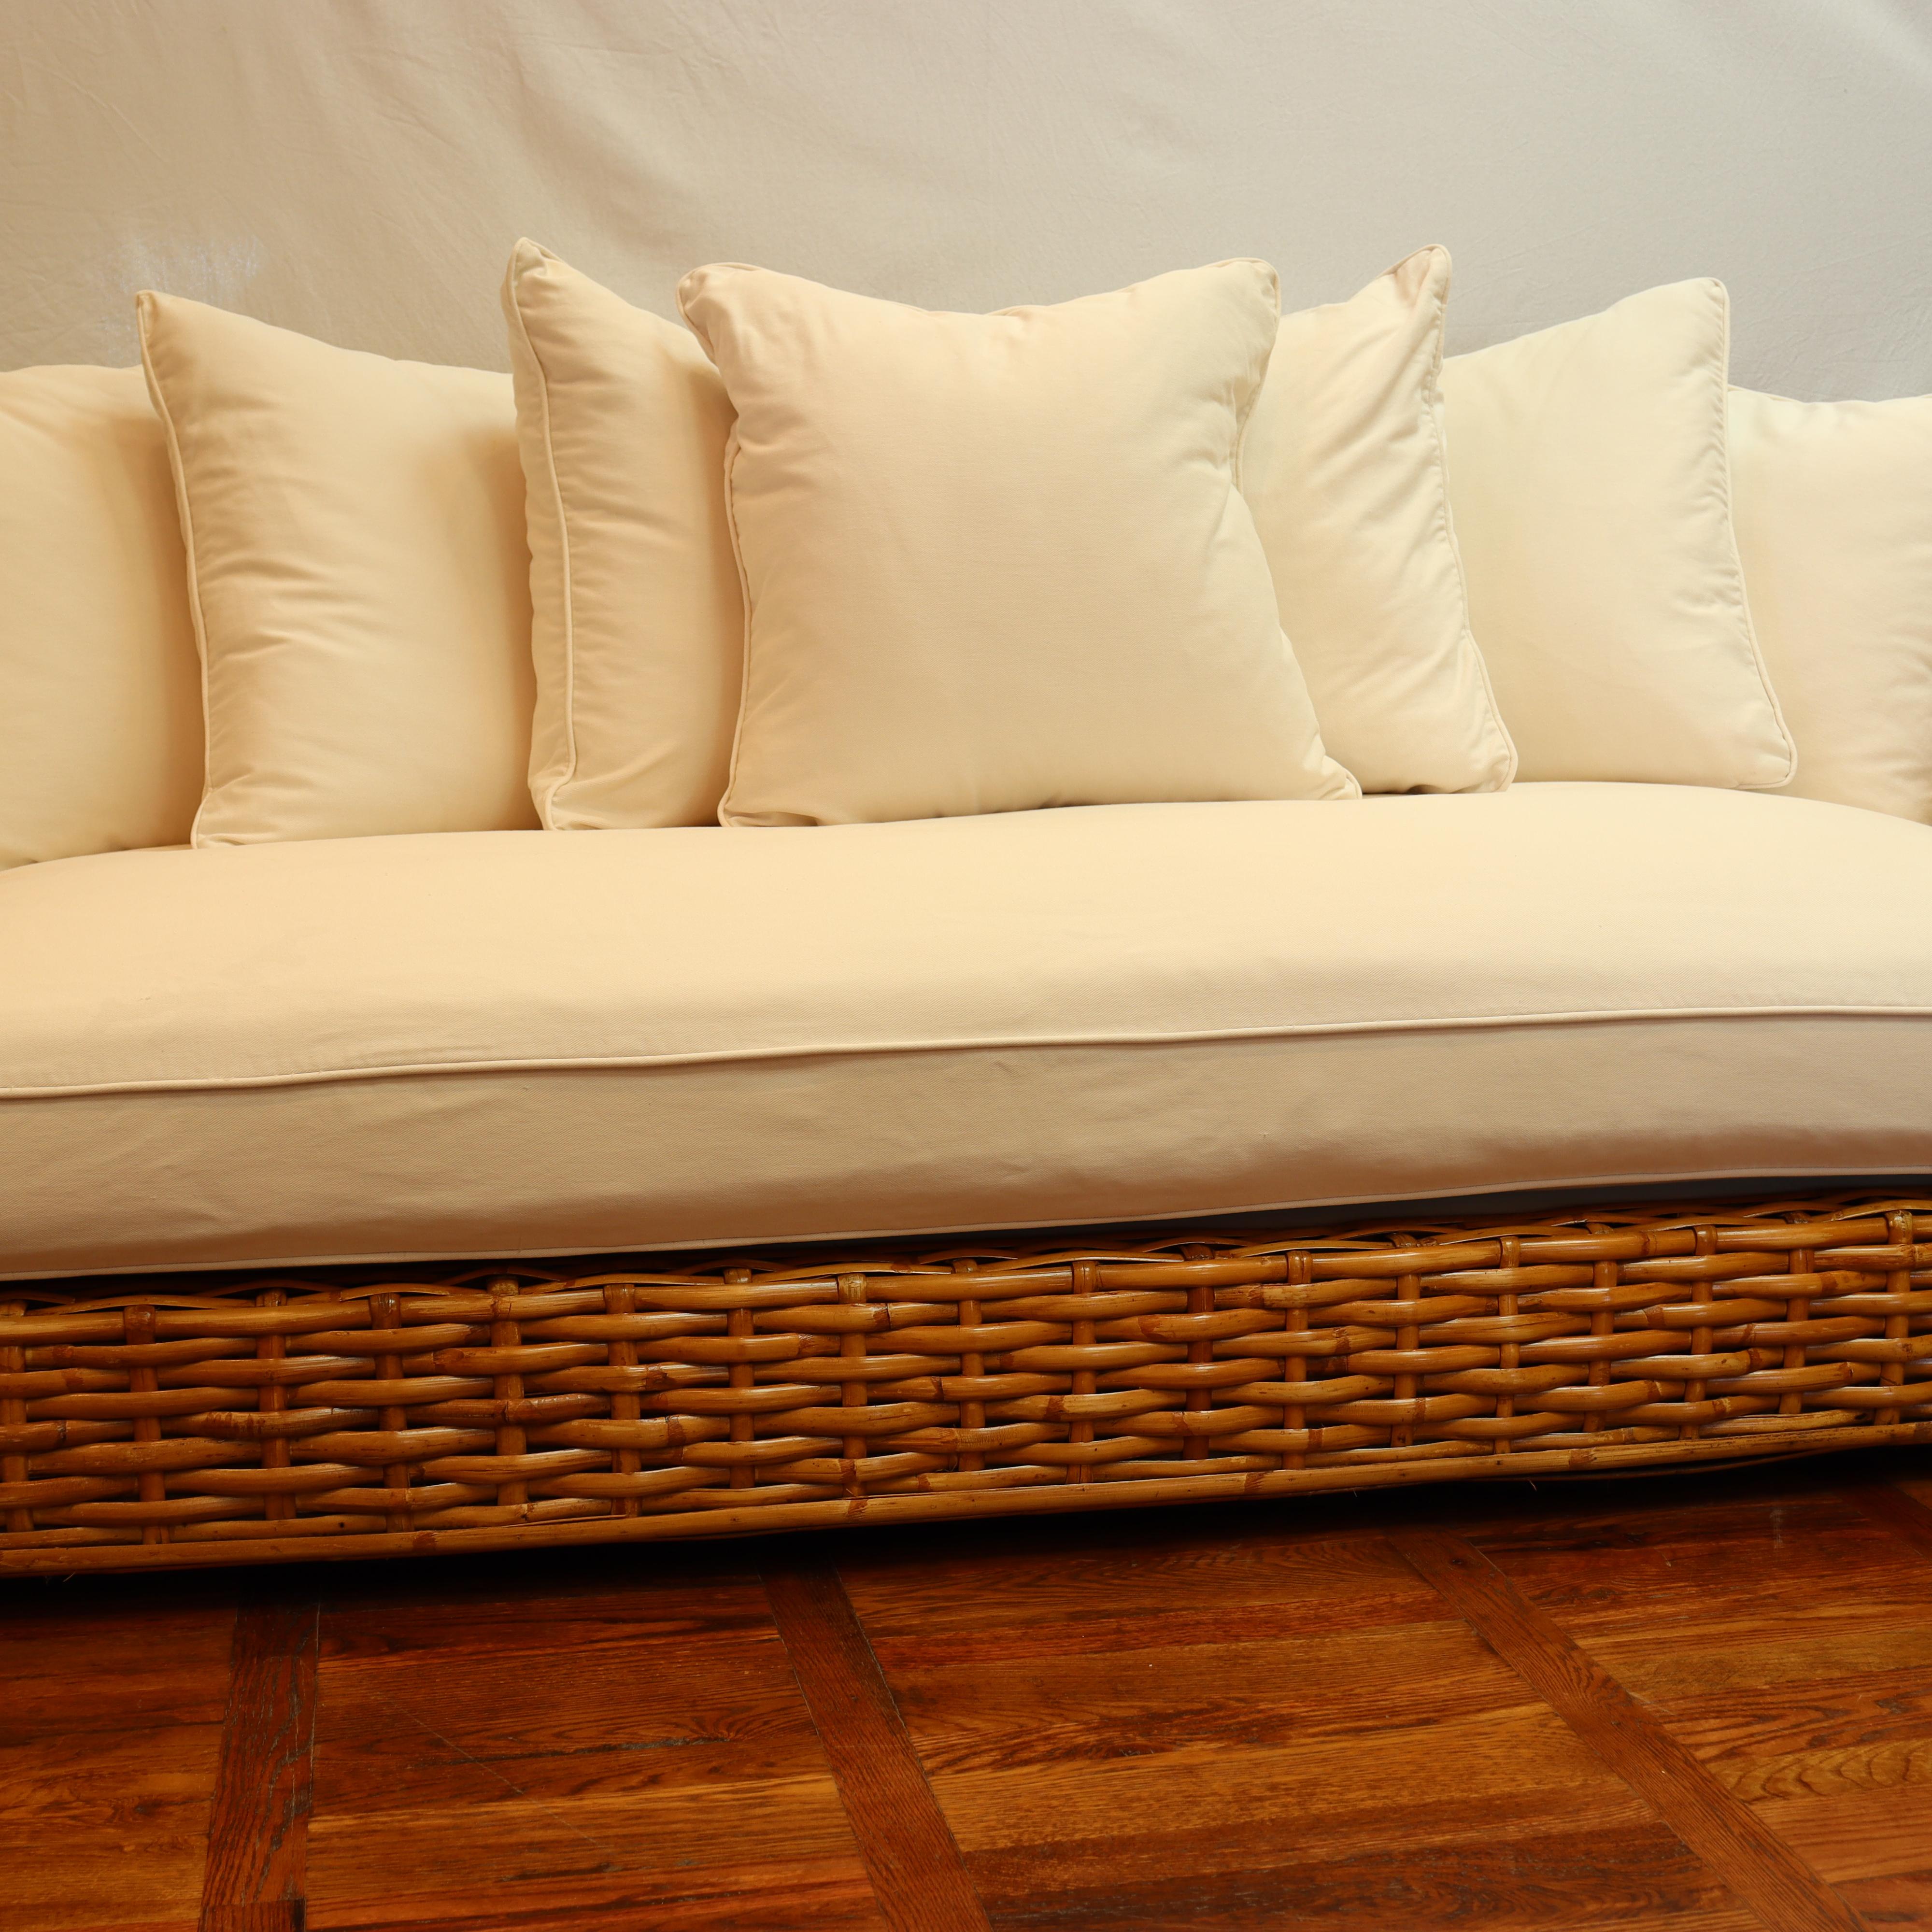 Qualität Made CIRCA 2007 Restoration Hardware geflochtenen Rattan-Sofa mit Daunen gefüllt weißer Baumwolle gepolsterte Kissen. Das Sitzkissen besteht aus einer Daunenhülle, die einen Schaumstoffkern umgibt. Die Rückenkissen sind alle mit Daunen